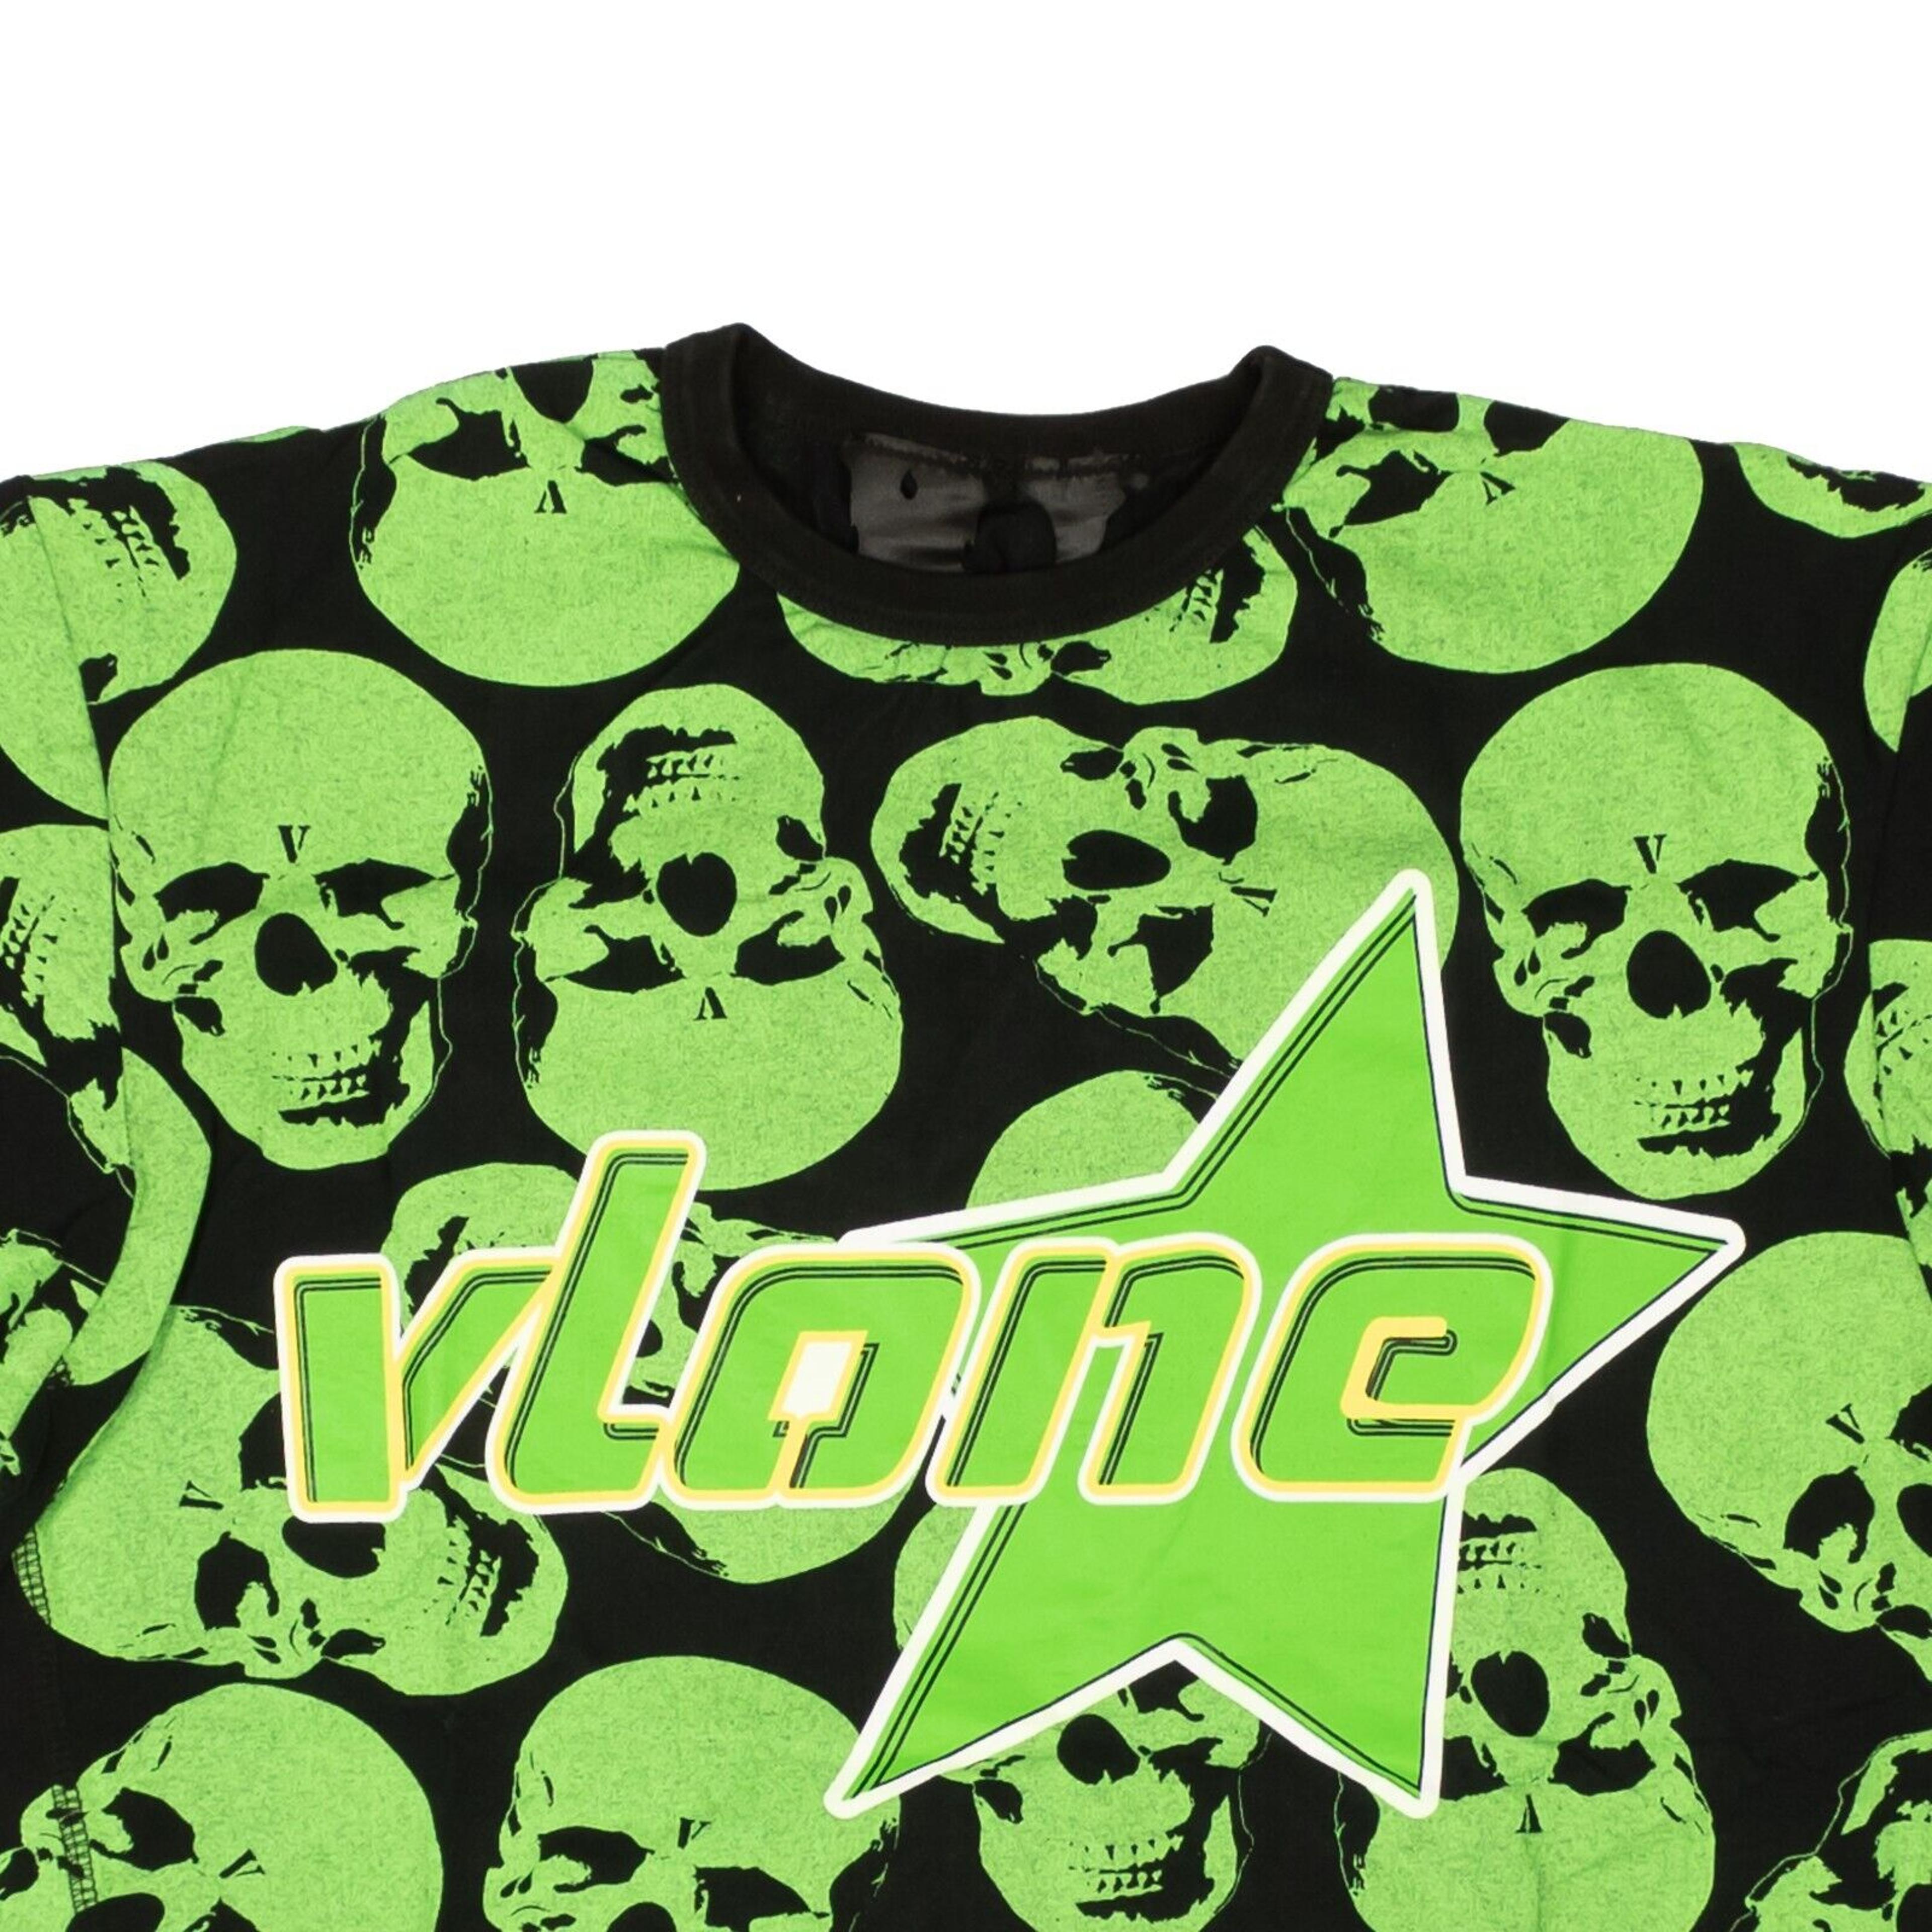 Alternate View 1 of Vlone Crypt Skull T-Shirt - Green/Black